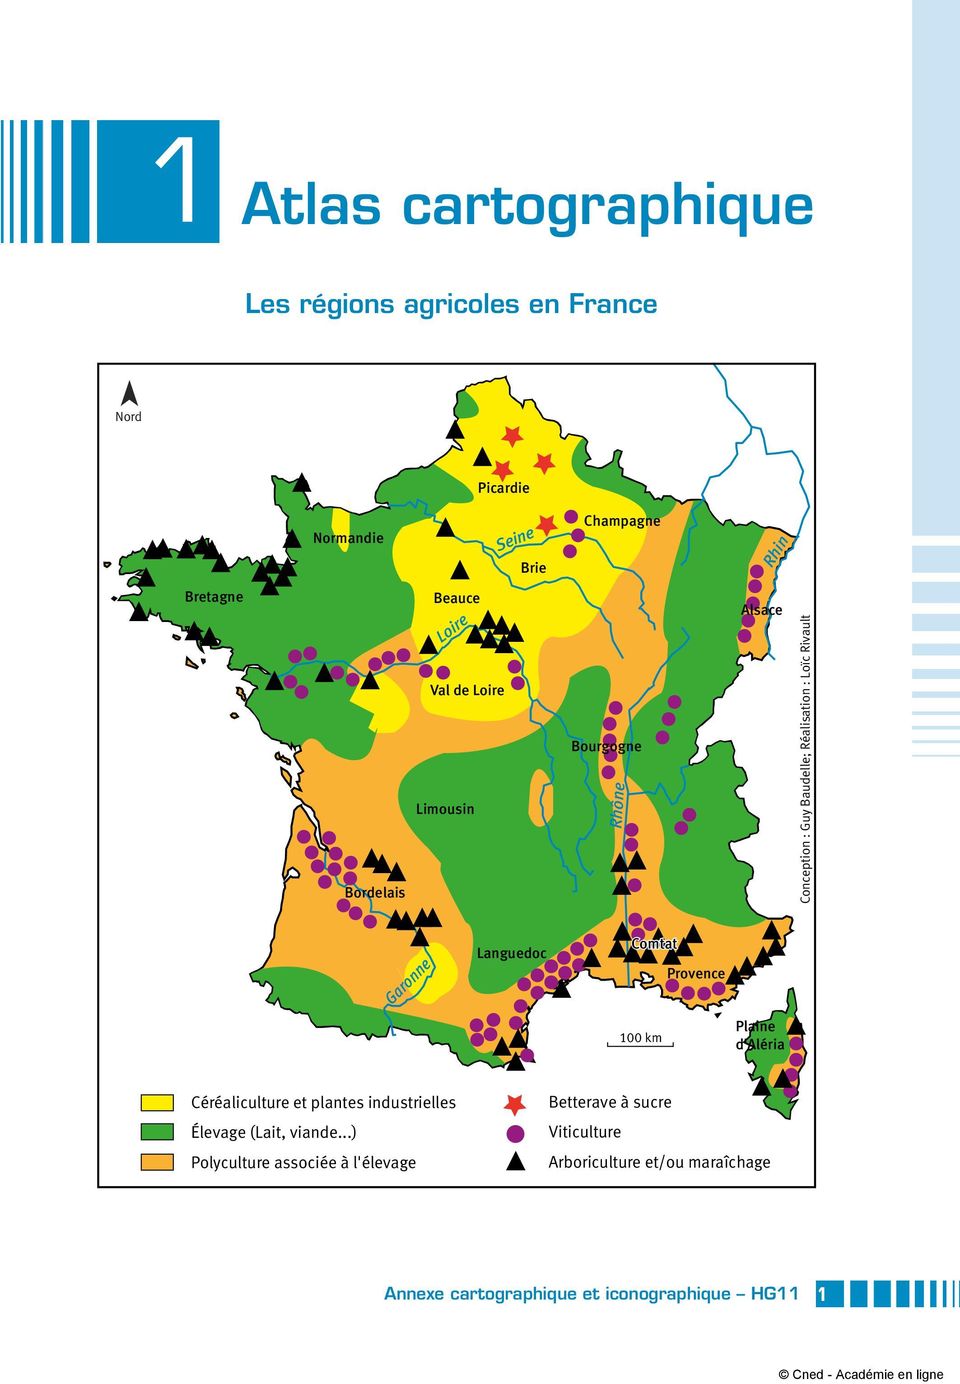 : Loïc Rivault Garonne Languedoc Comtat 100 km Provence Plaine d'aléria Céréaliculture et plantes industrielles